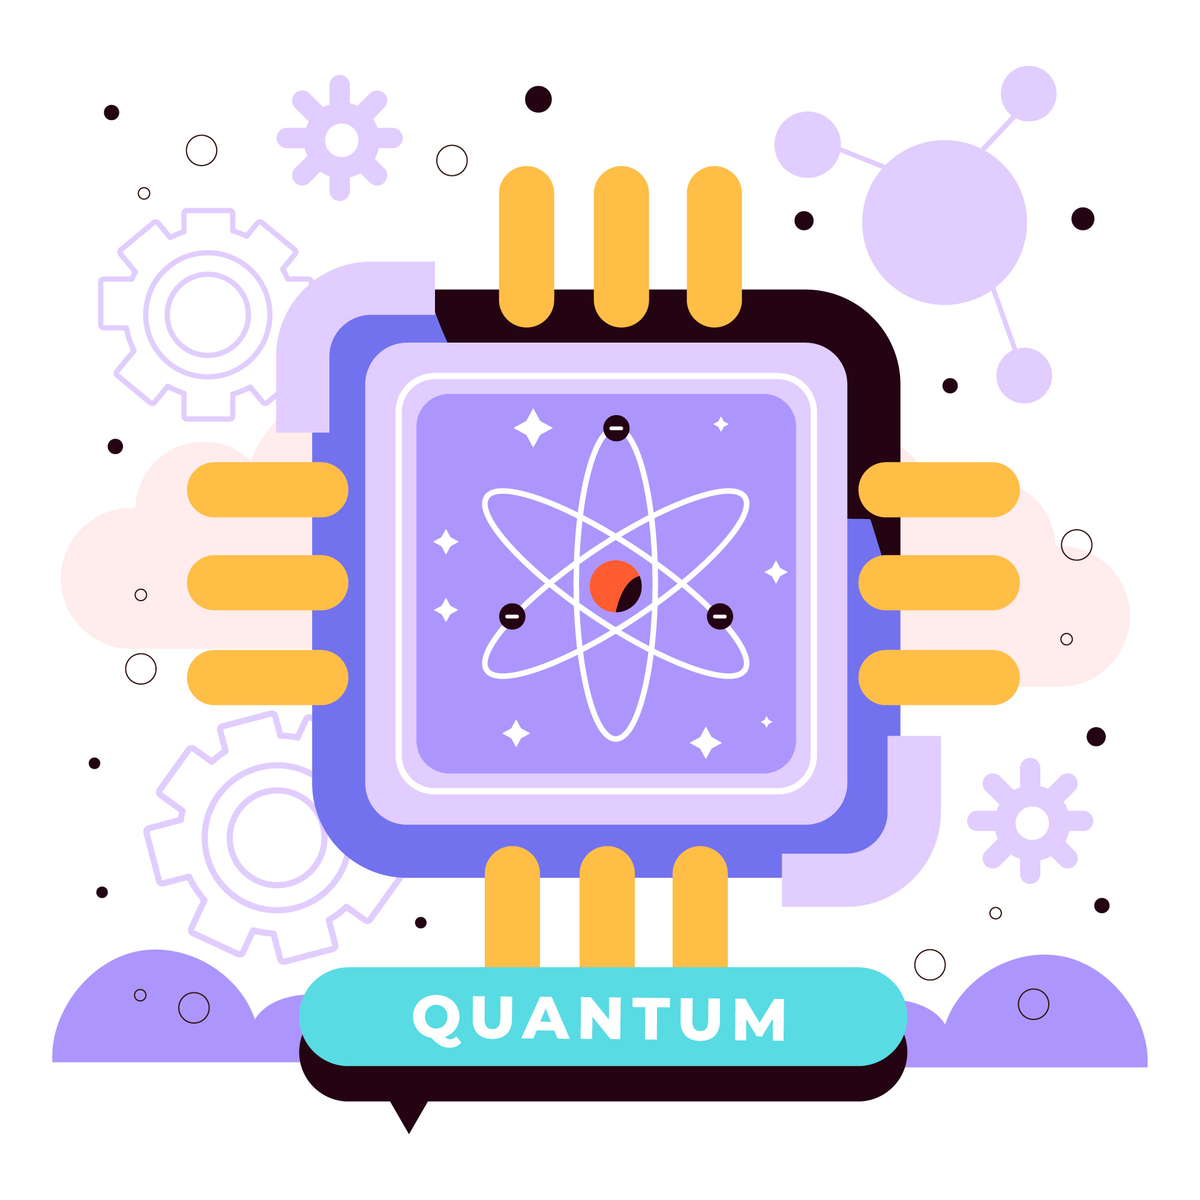 quantum computing explained